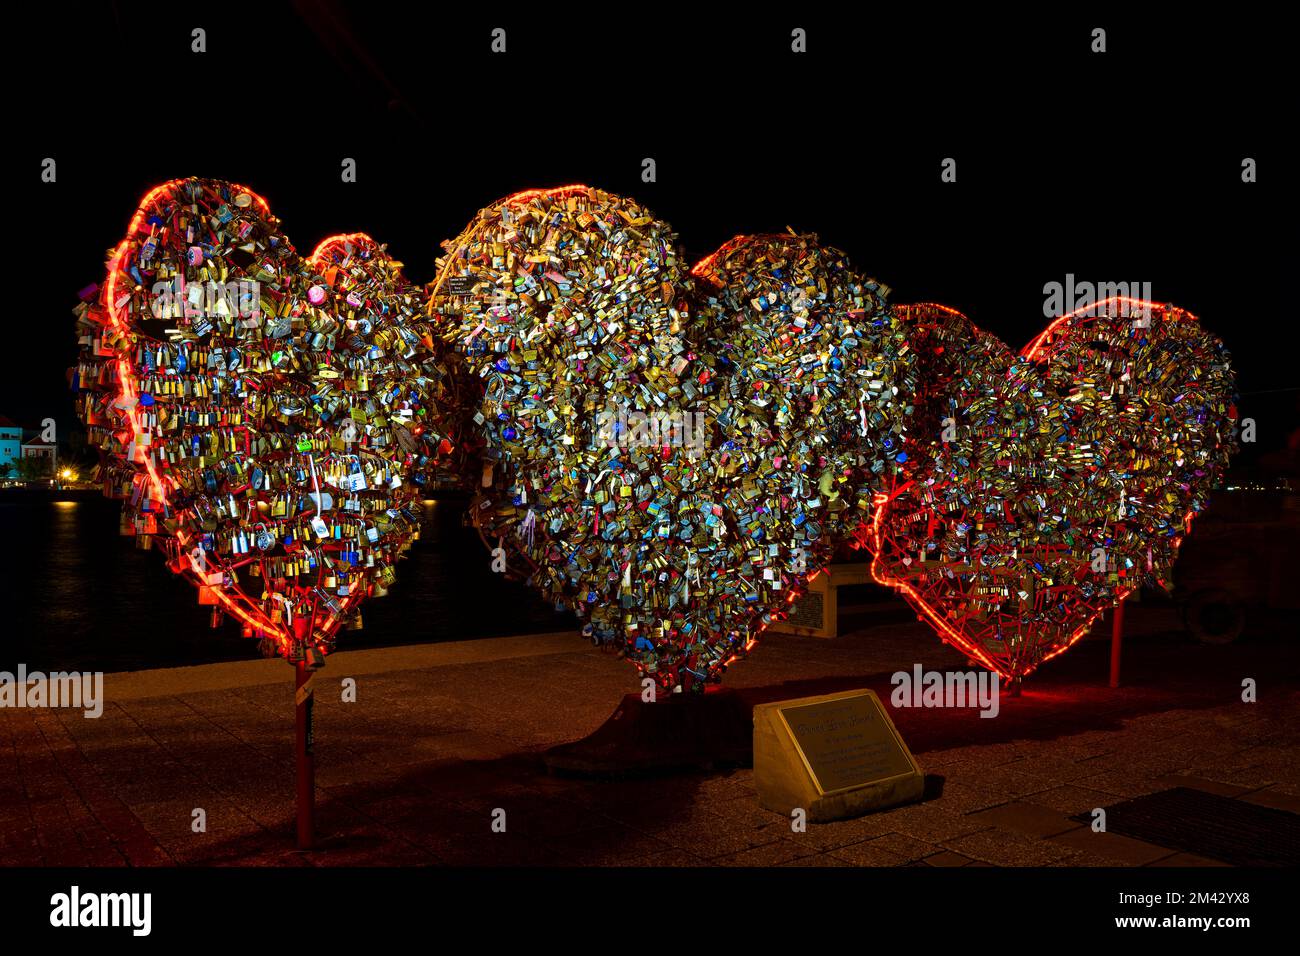 Punda Love Hearts (lucchetti d'amore) di Carlos Blaaker di notte. Willemstad, Curacao, Antille olandesi Foto Stock